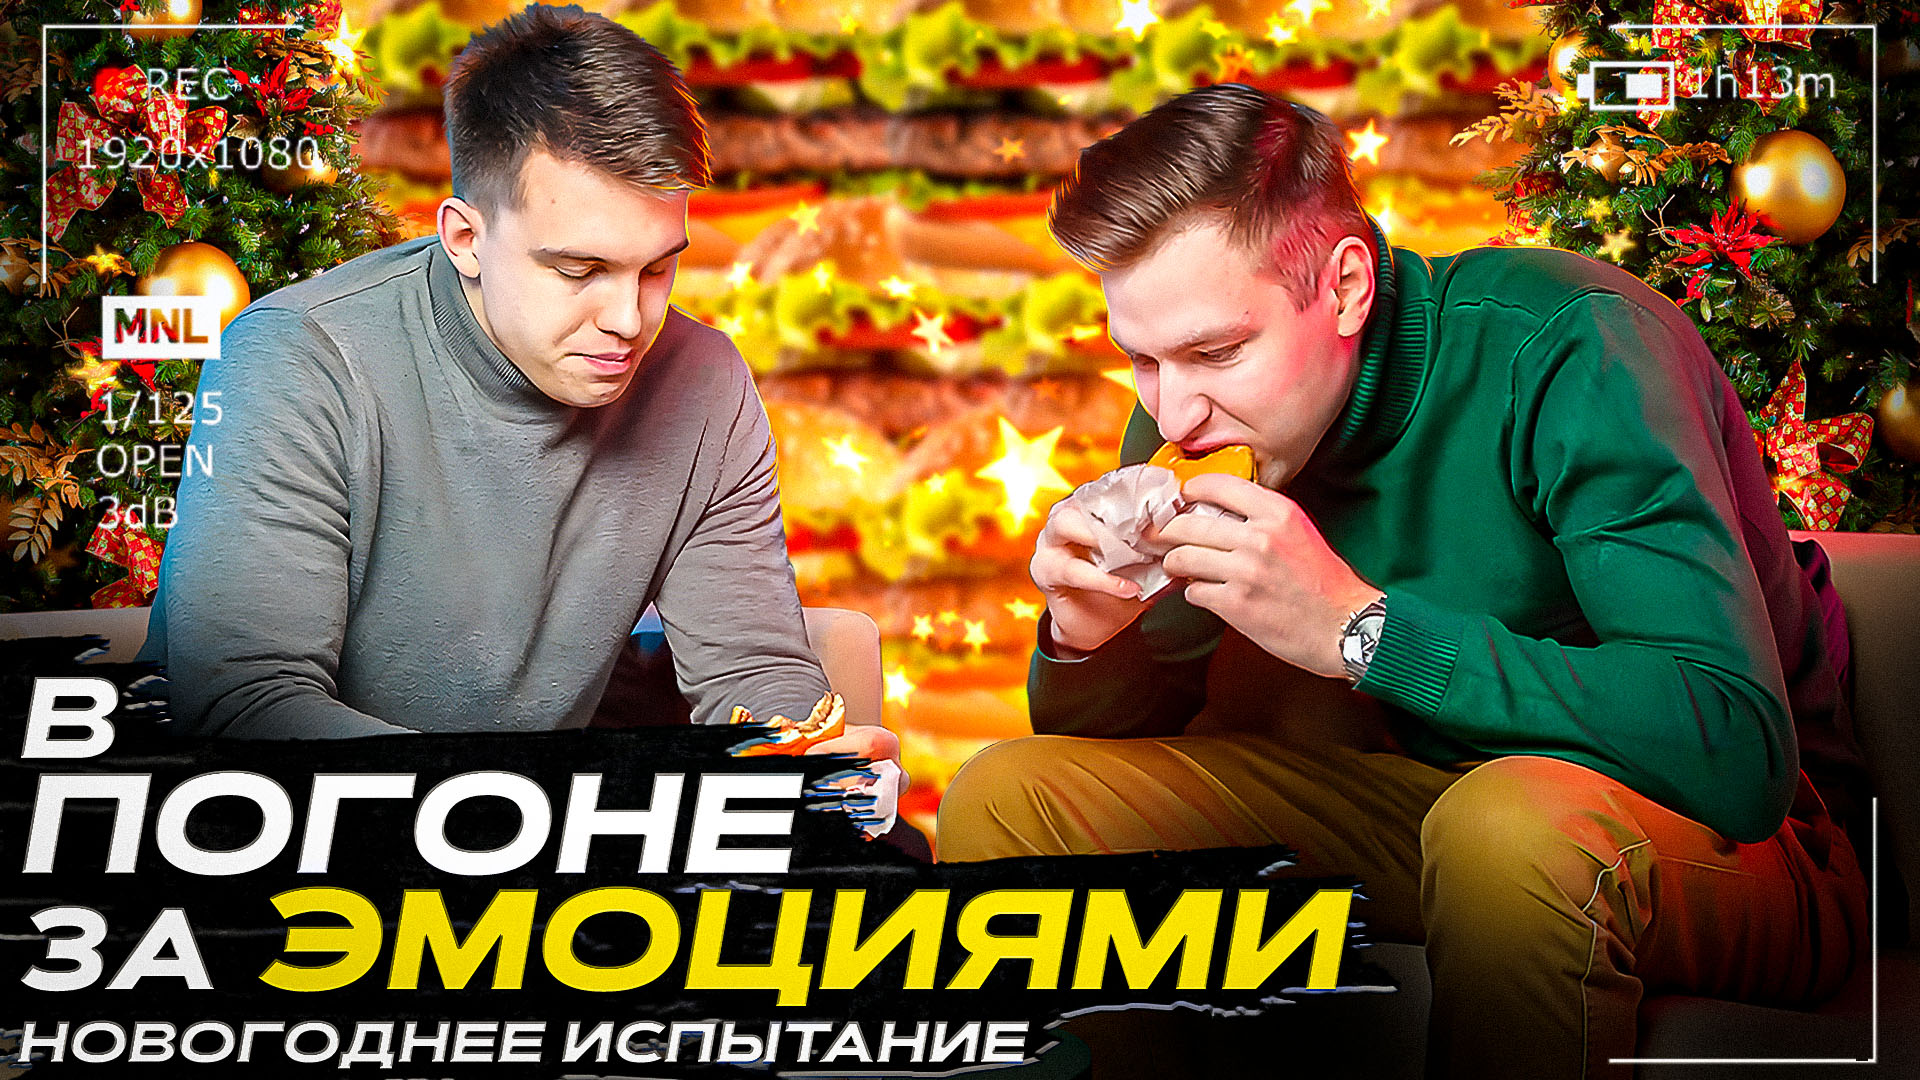 Реалити-шоу "В ПОГОНЕ ЗА ЭМОЦИЯМИ" Новогоднее испытание!